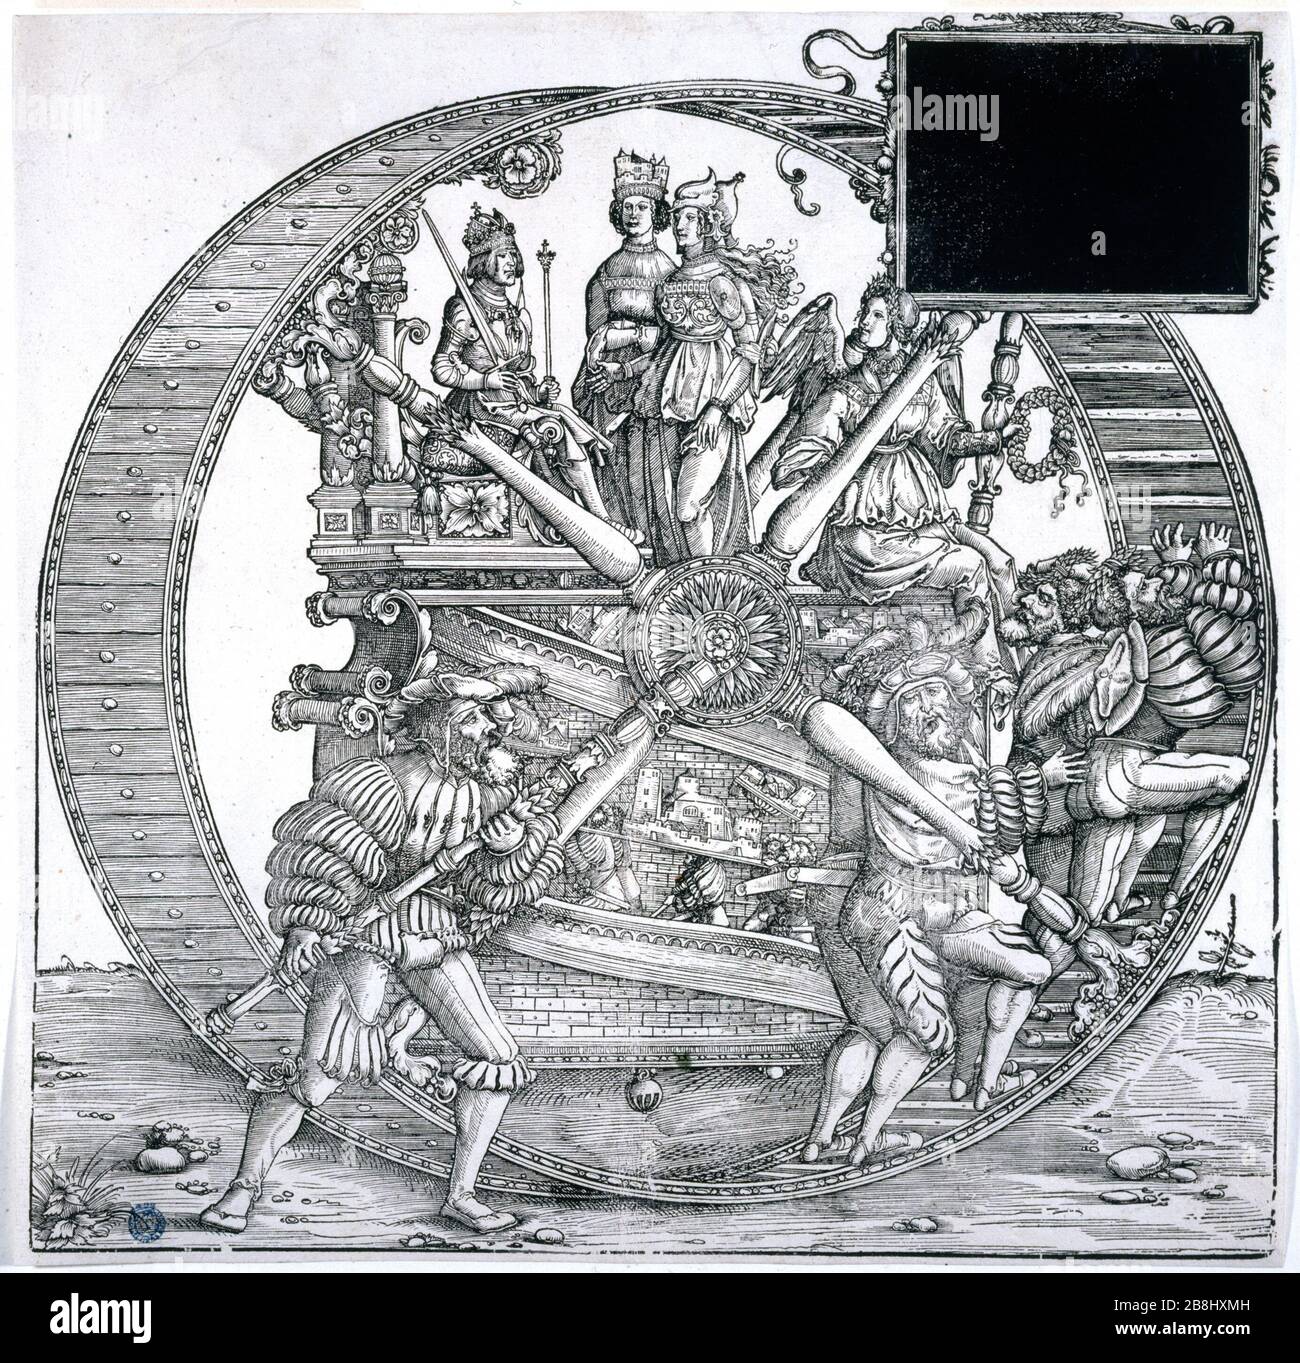 TRIUMPH OF MAXIMILIEN, A BIG WHEEL Hans Burgkmair (1473-1531). 'Le Triomphe de Maximilien, une grande roue'. Bois, 1512-1519. Musée des Beaux-Arts de la ville de Paris, Petit Palais. Stock Photo